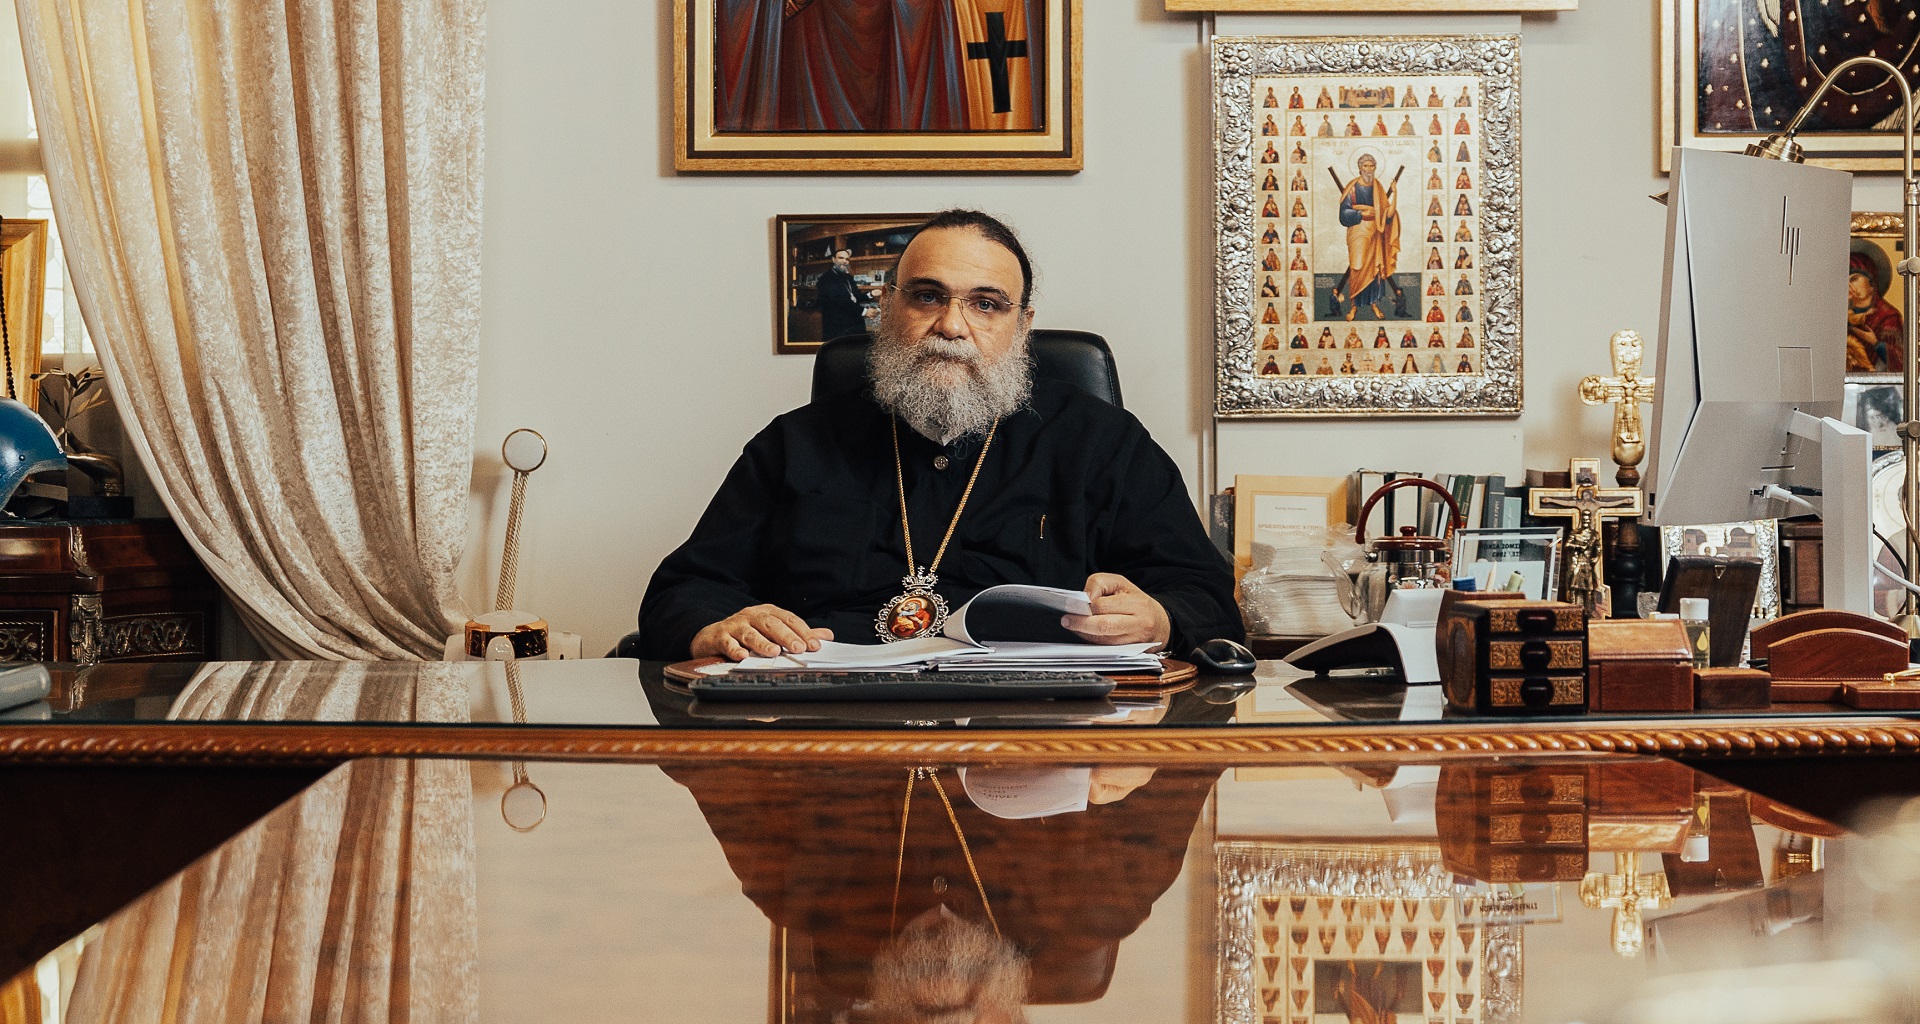 Πανεπιστημιακός καθηγητής και πρώην Πρύτανης: “Θεωρώ ότι ο Μητροπολίτης Ταμασού, Ησαΐας Κυκκώτης είναι κατάλληλος, ως νέος Αρχιεπίσκοπος της Εκκλησίας της Κύπρου”